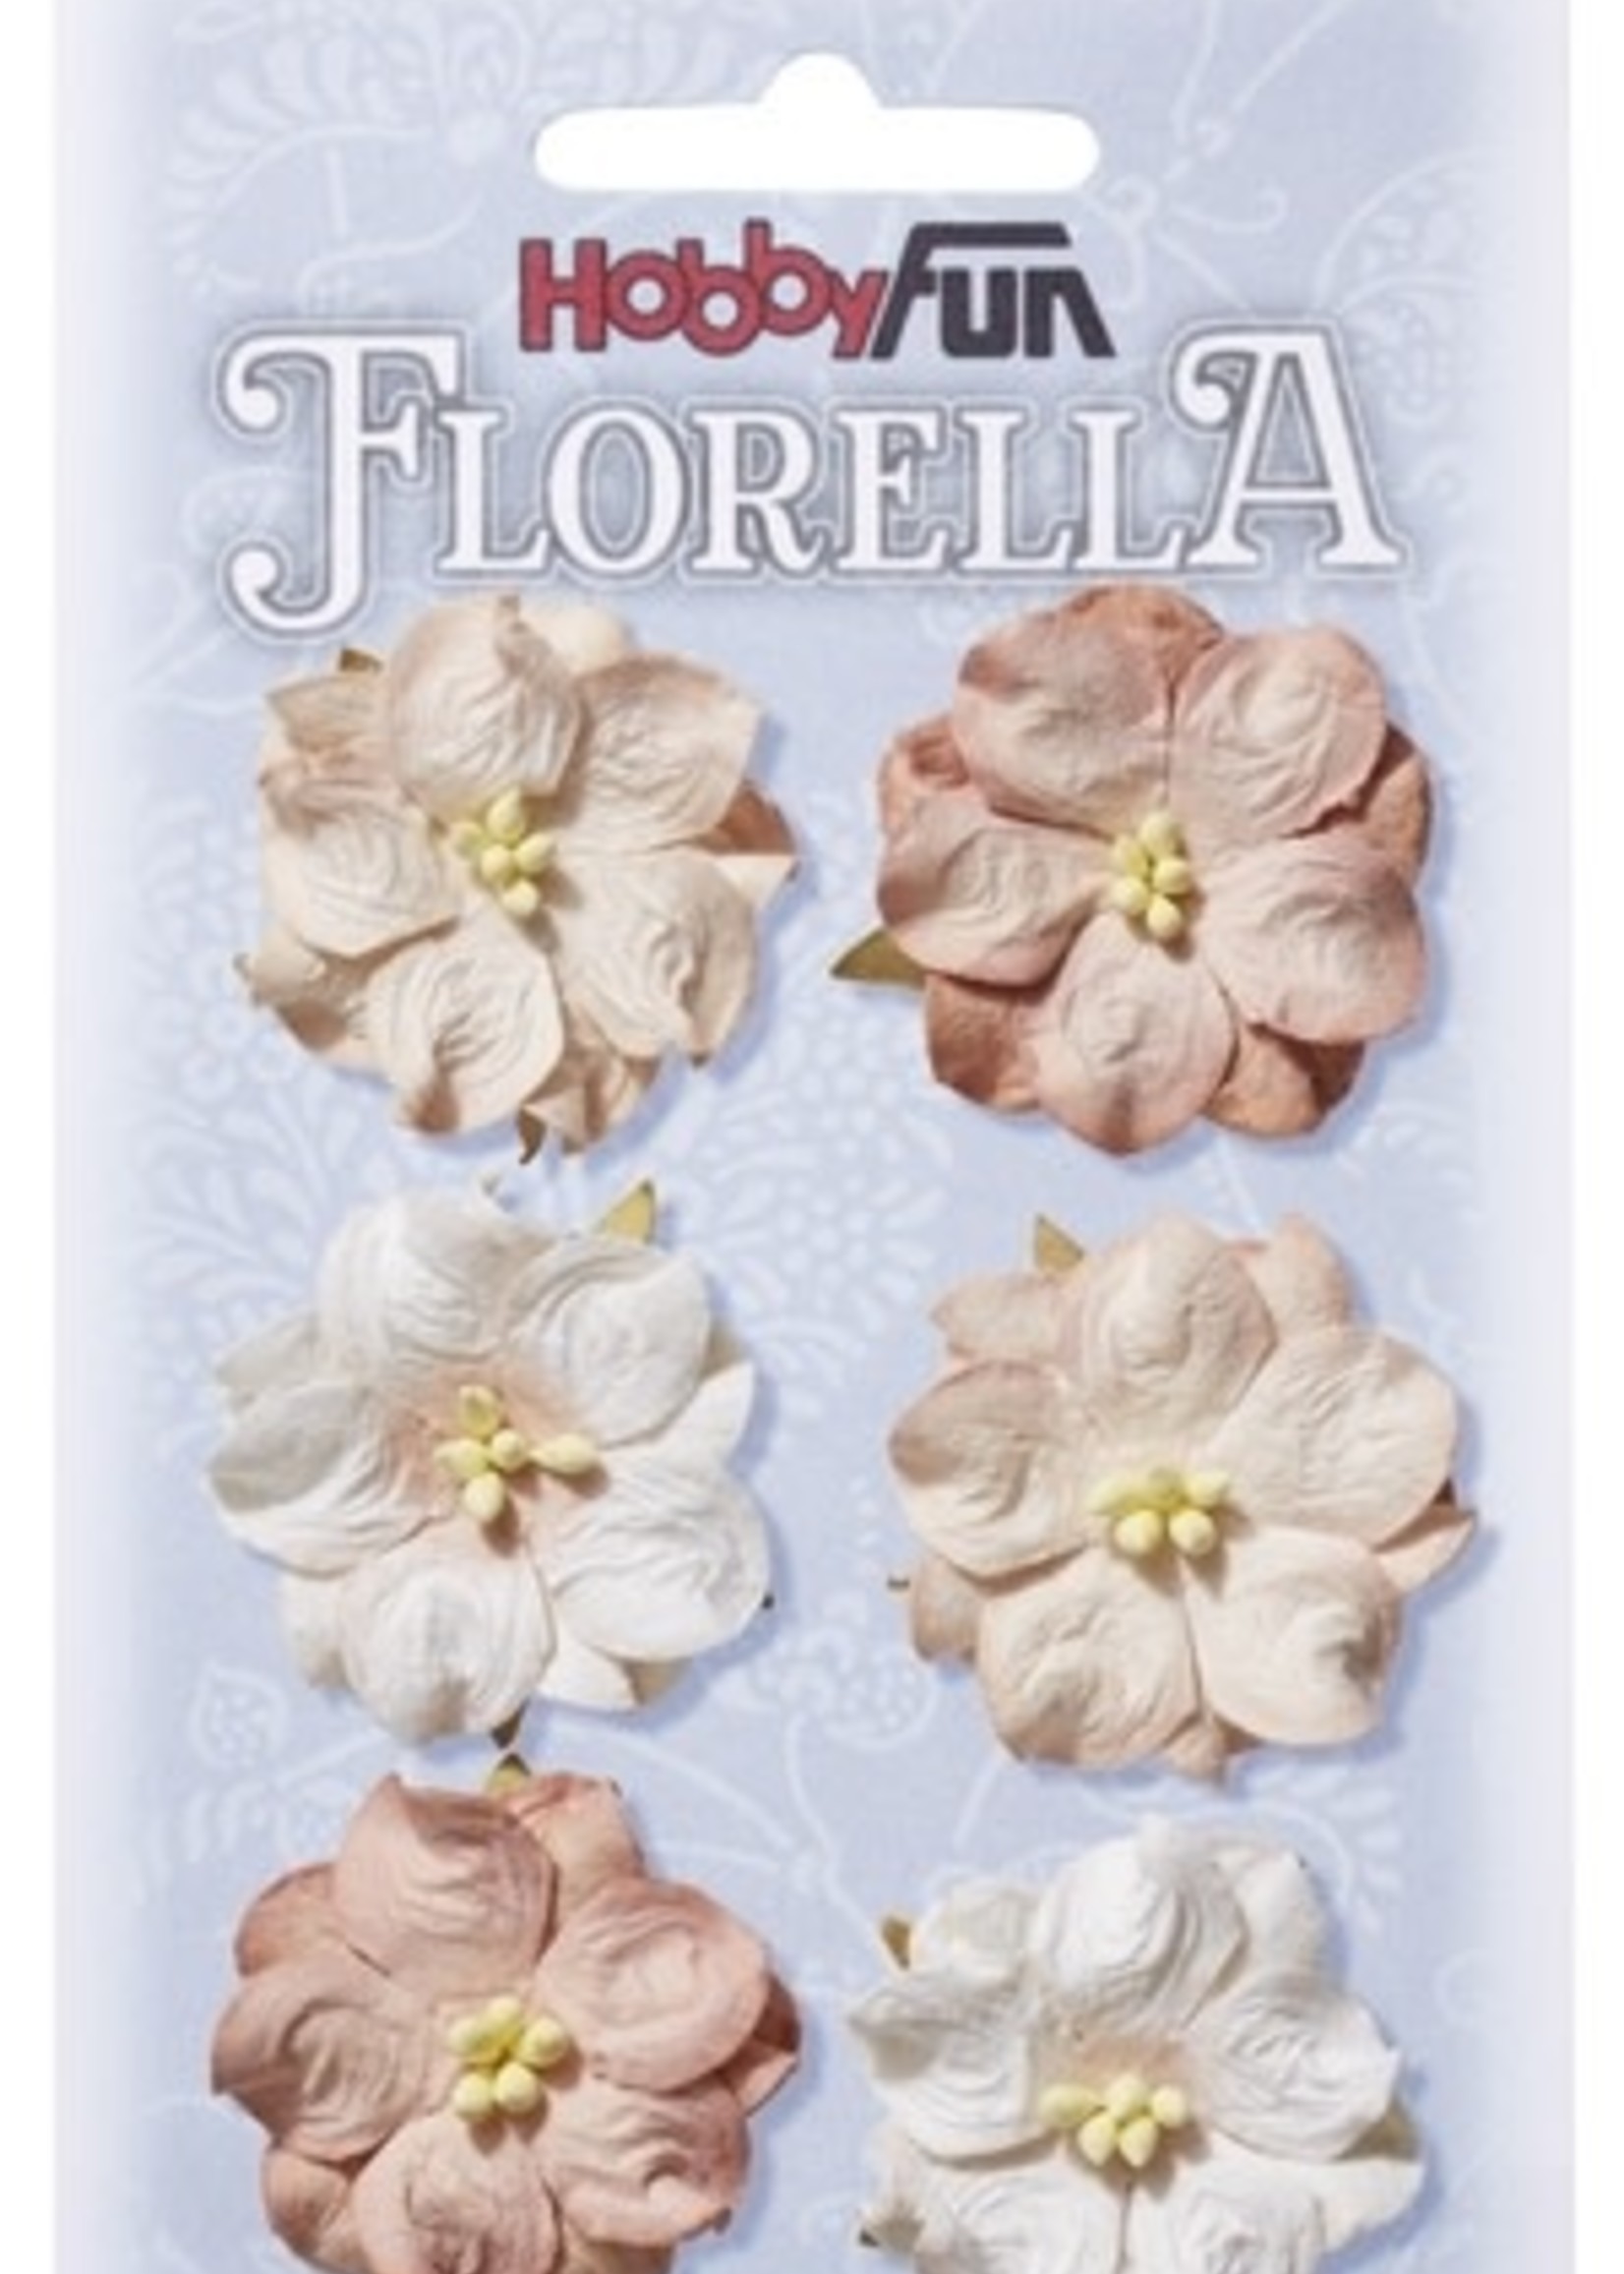 Hobbyfun Hobbyfun - Florella - Bloemen Rose 3.5 cm